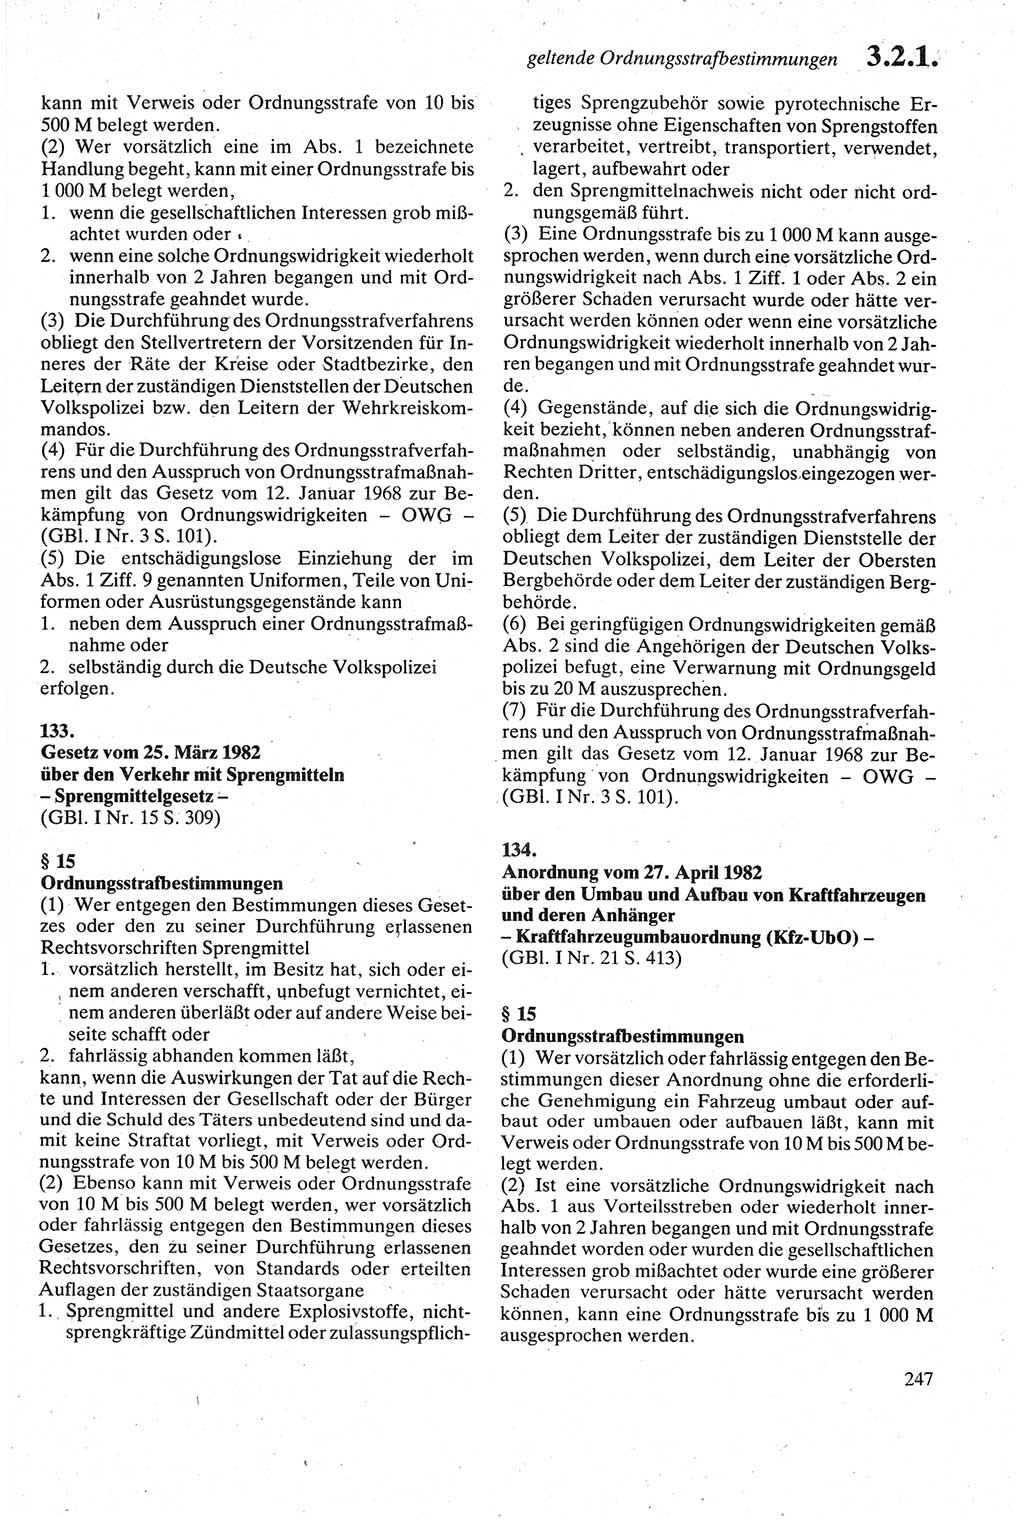 Strafgesetzbuch (StGB) der Deutschen Demokratischen Republik (DDR) sowie angrenzende Gesetze und Bestimmungen 1979, Seite 247 (StGB DDR Ges. Best. 1979, S. 247)